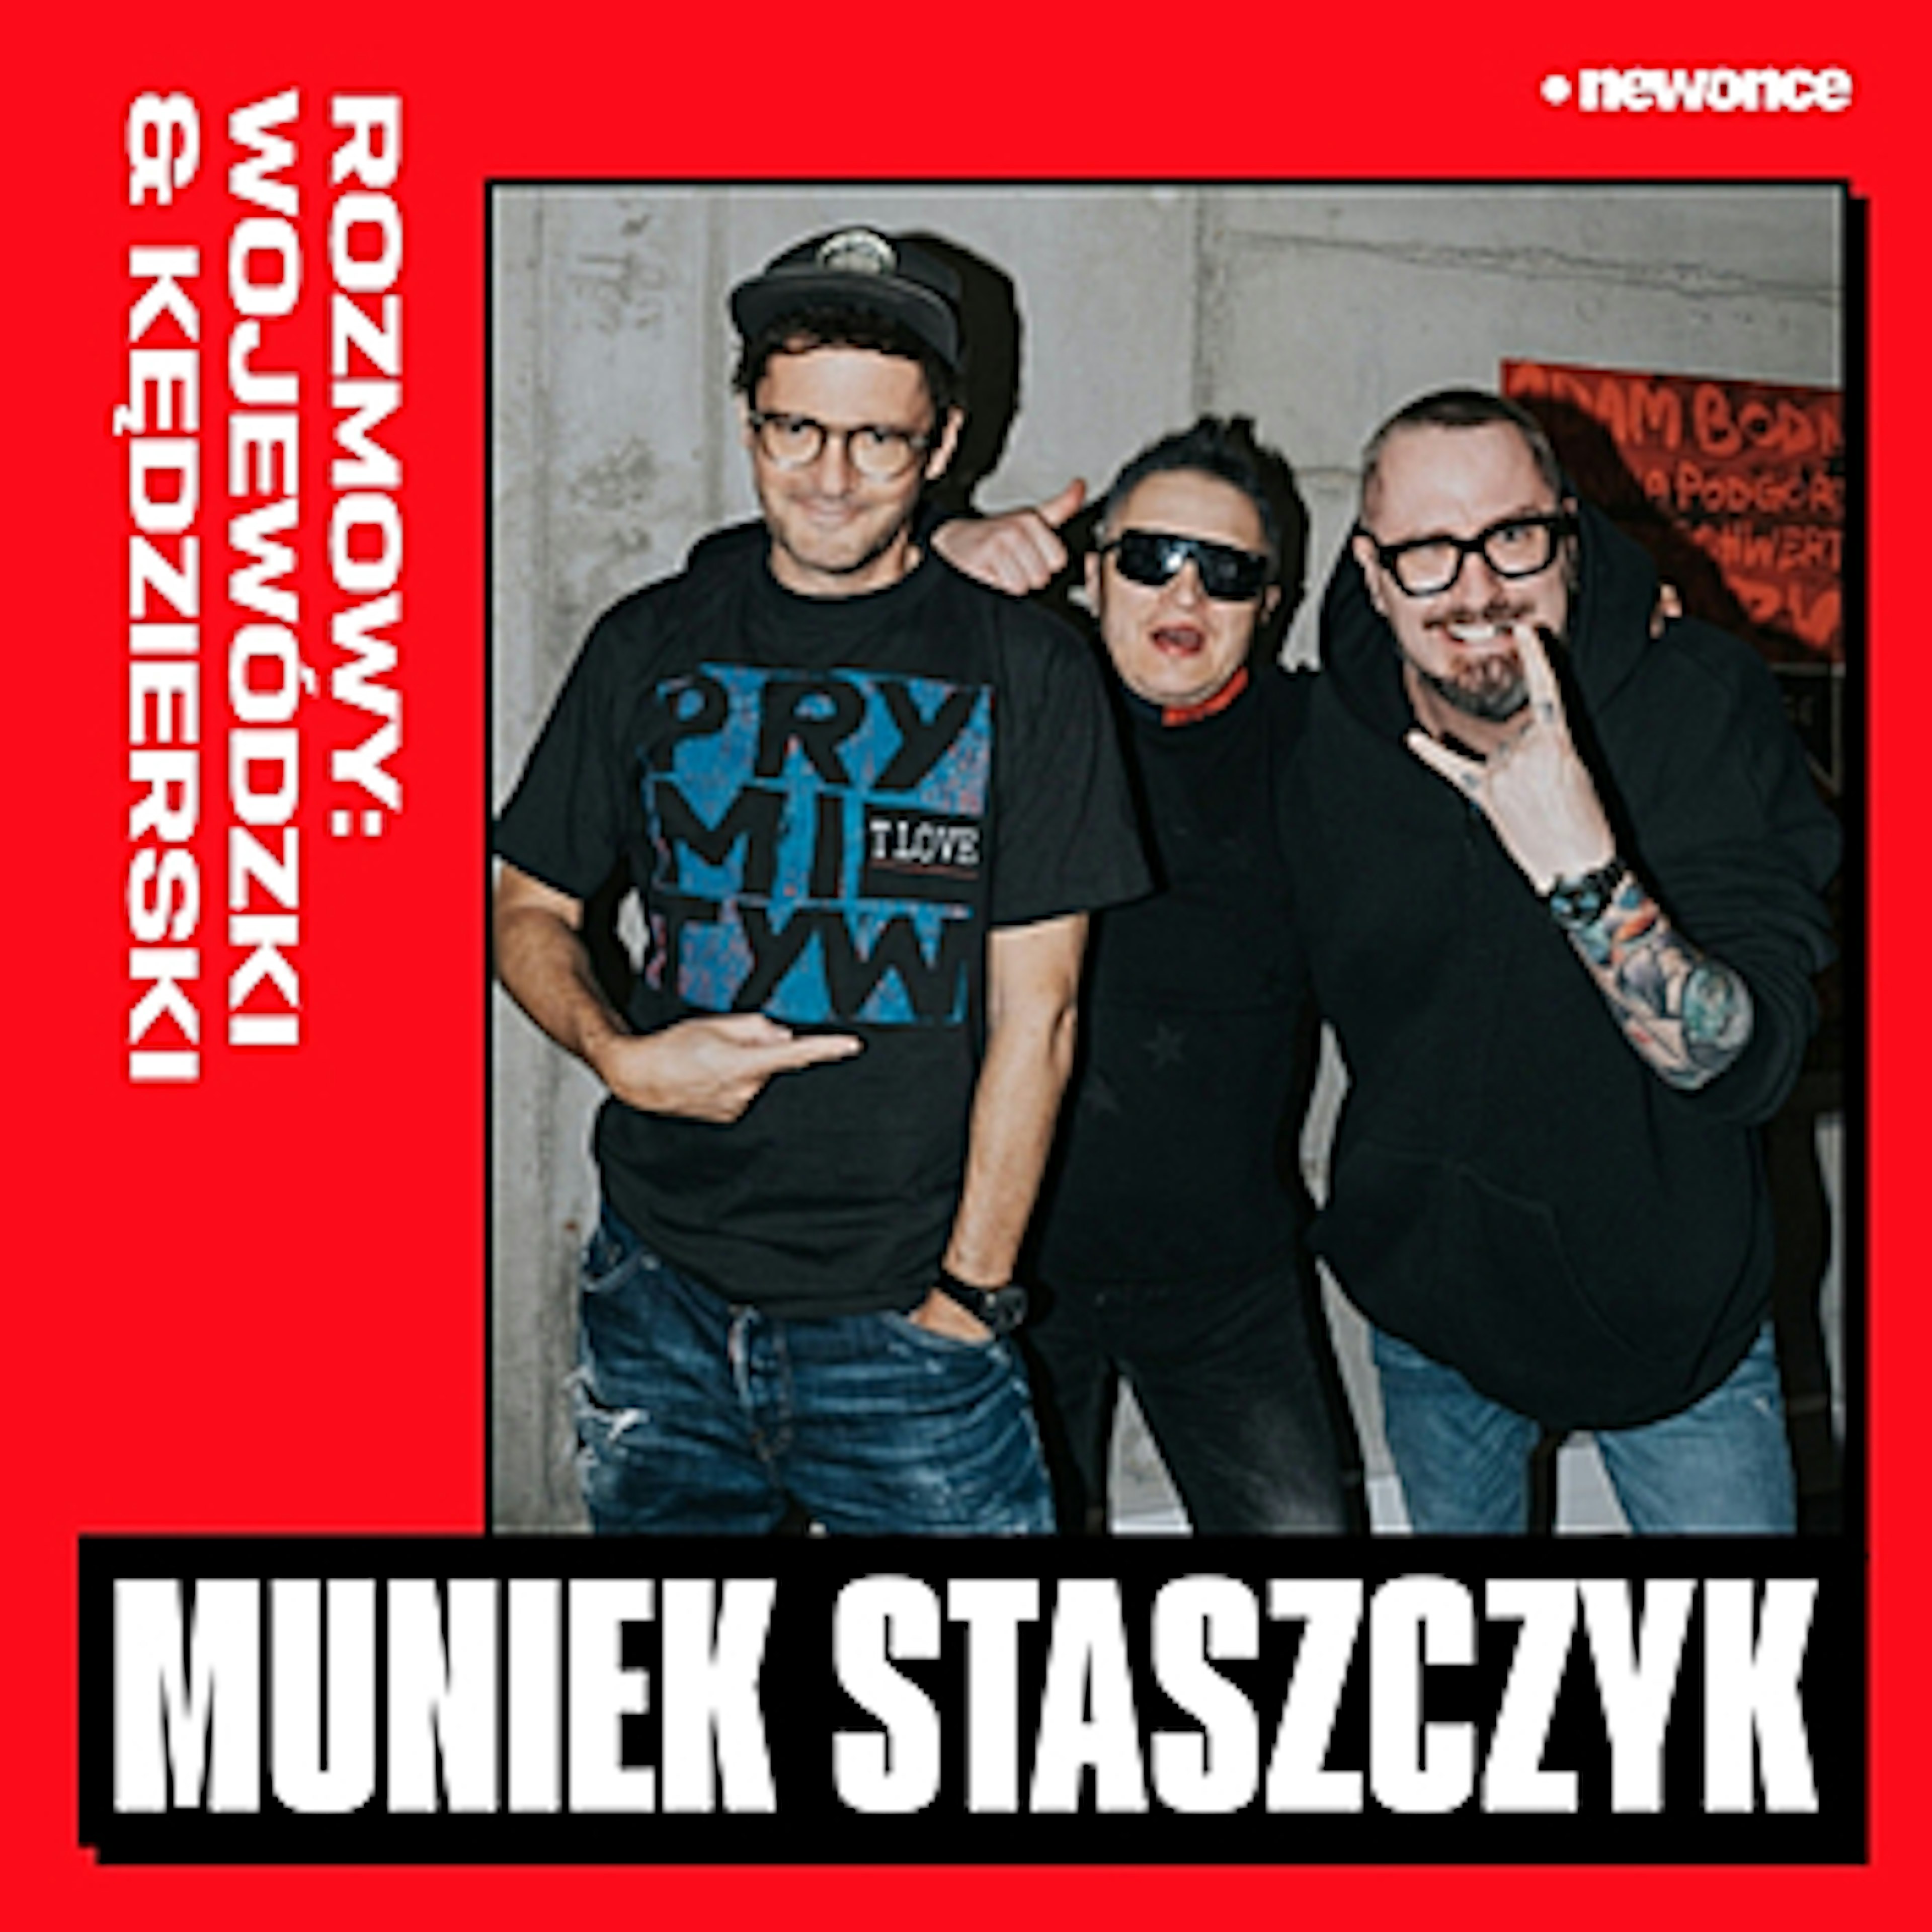 Rozmowy: Wojewódzki & Kędzierski - Staszczyk. O czym rozmawiają rockmani?